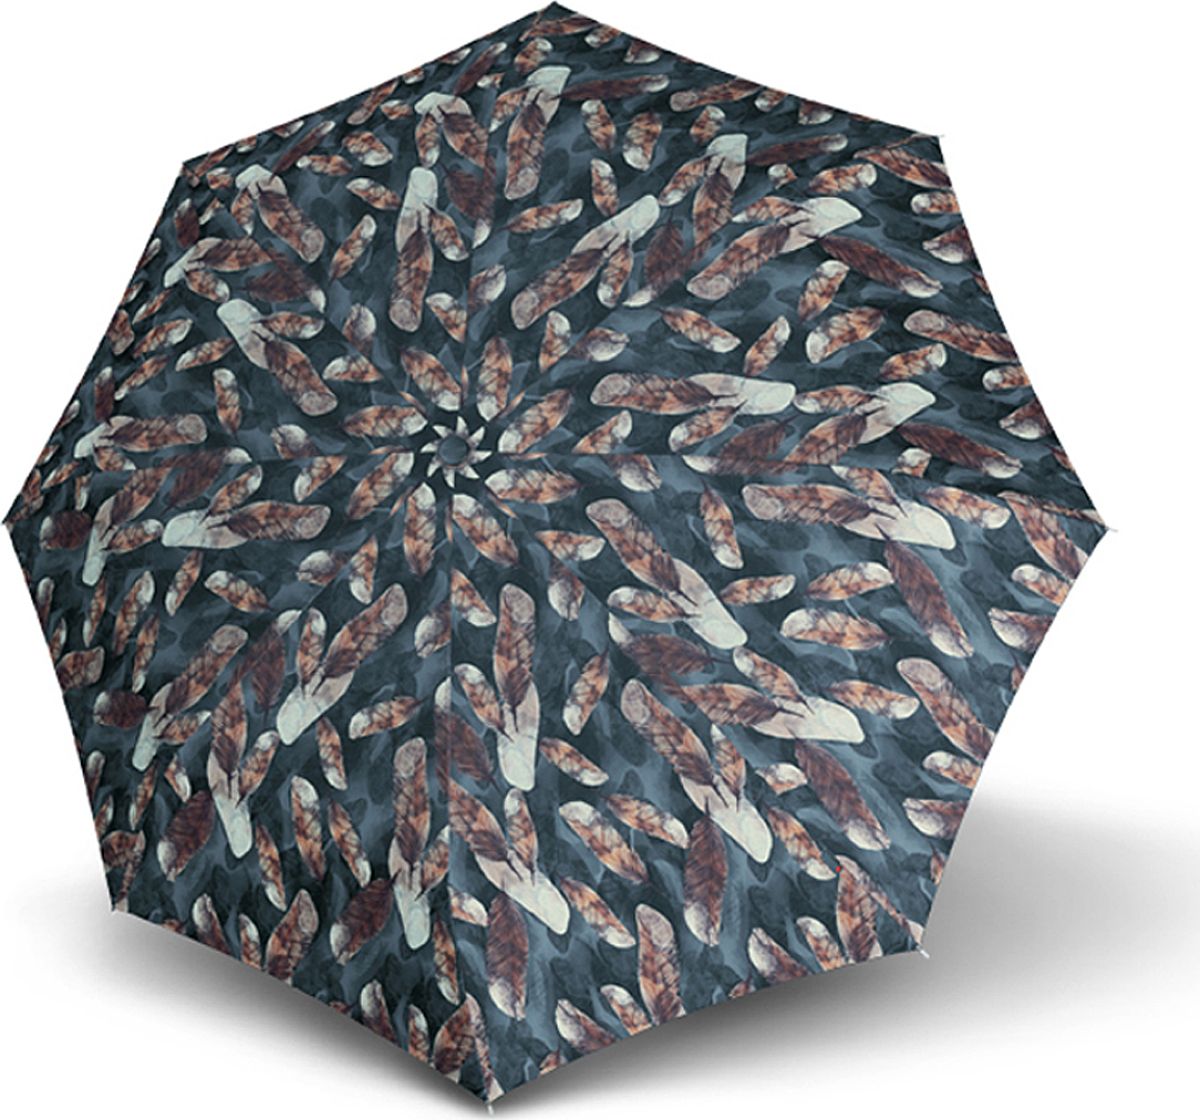 Зонт женский Knirps, автомат, 3 сложения, цвет: черный, бежевый, серый. 9532008216